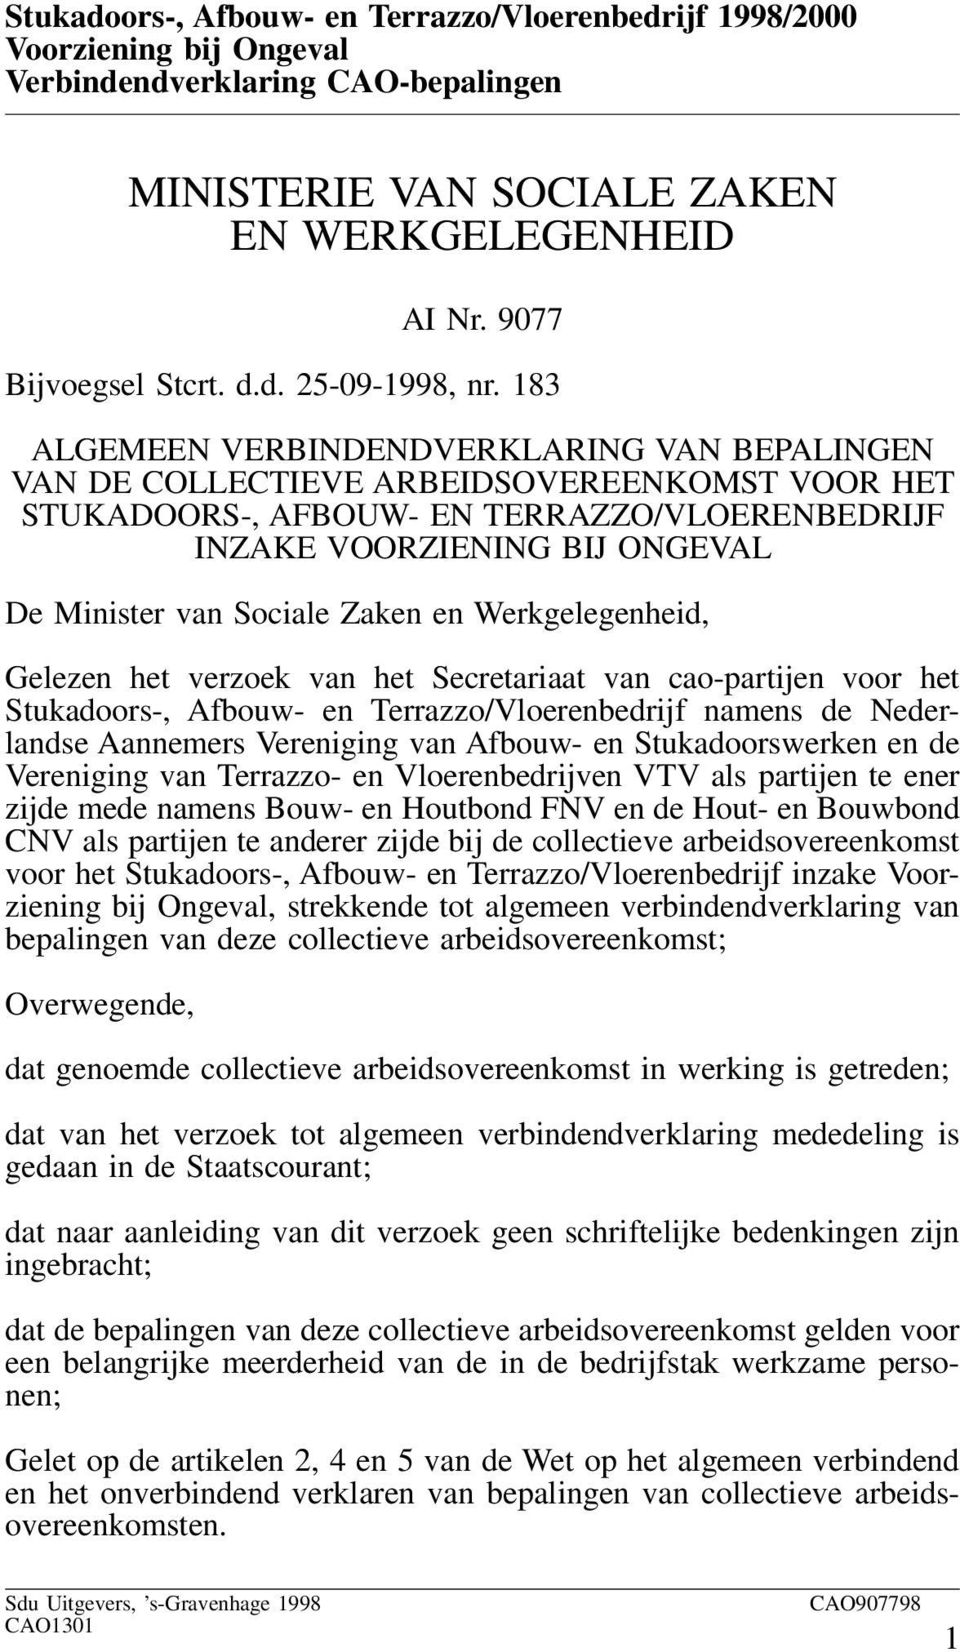 Zaken en Werkgelegenheid, Gelezen het verzoek van het Secretariaat van cao-partijen voor het Stukadoors-, Afbouw- en Terrazzo/Vloerenbedrijf namens de Nederlandse Aannemers Vereniging van Afbouw- en